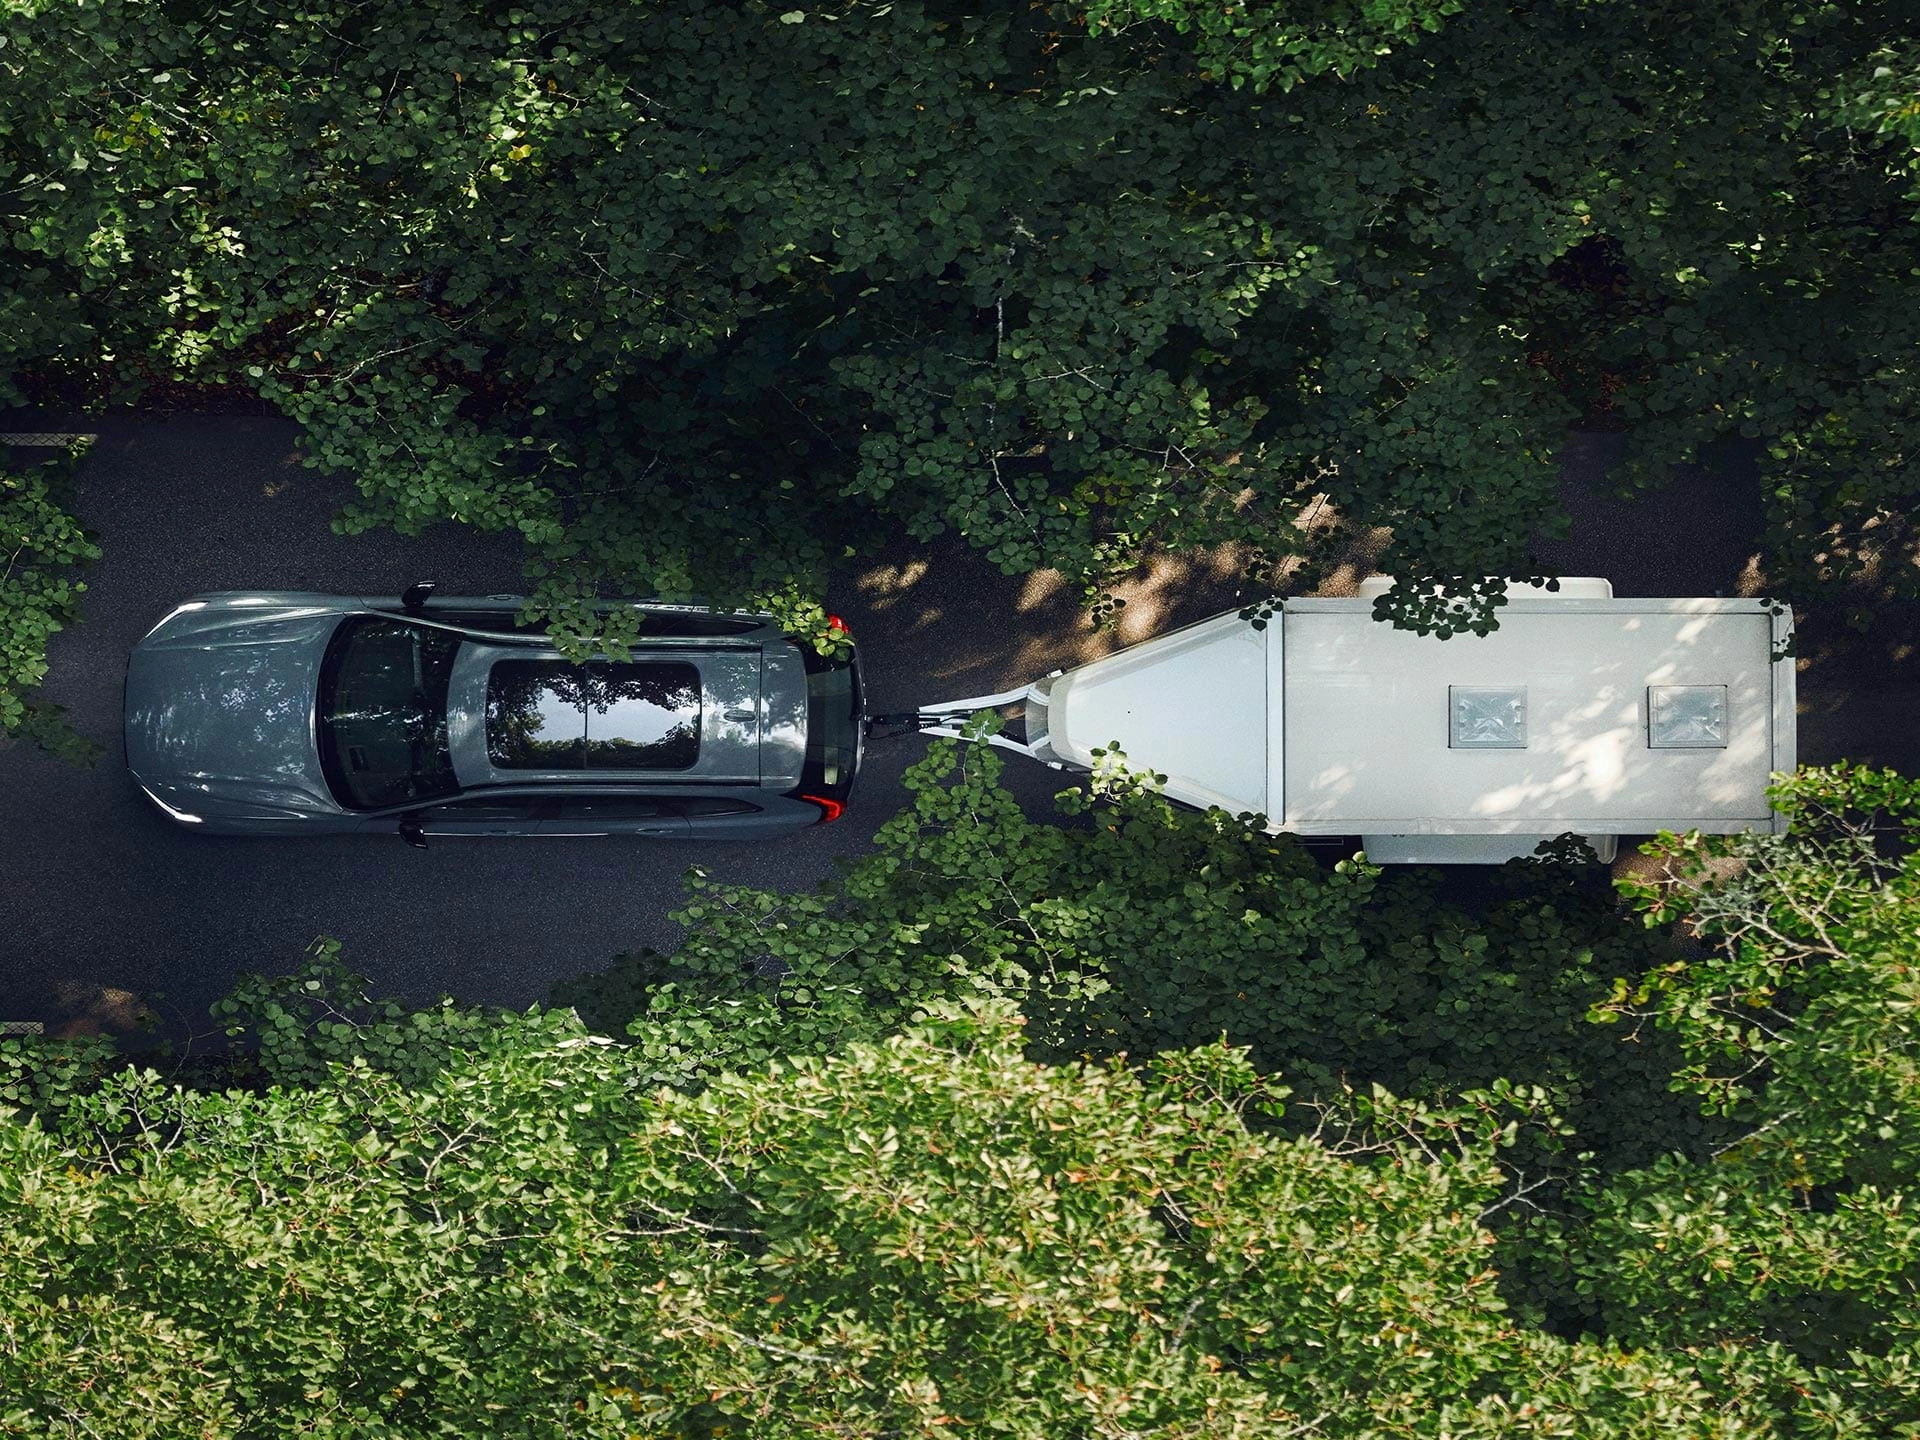 Widok z góry na holującego białą przyczepę SUV-a Volvo jadącego drogą pośród drzew liściastych w słoneczny dzień